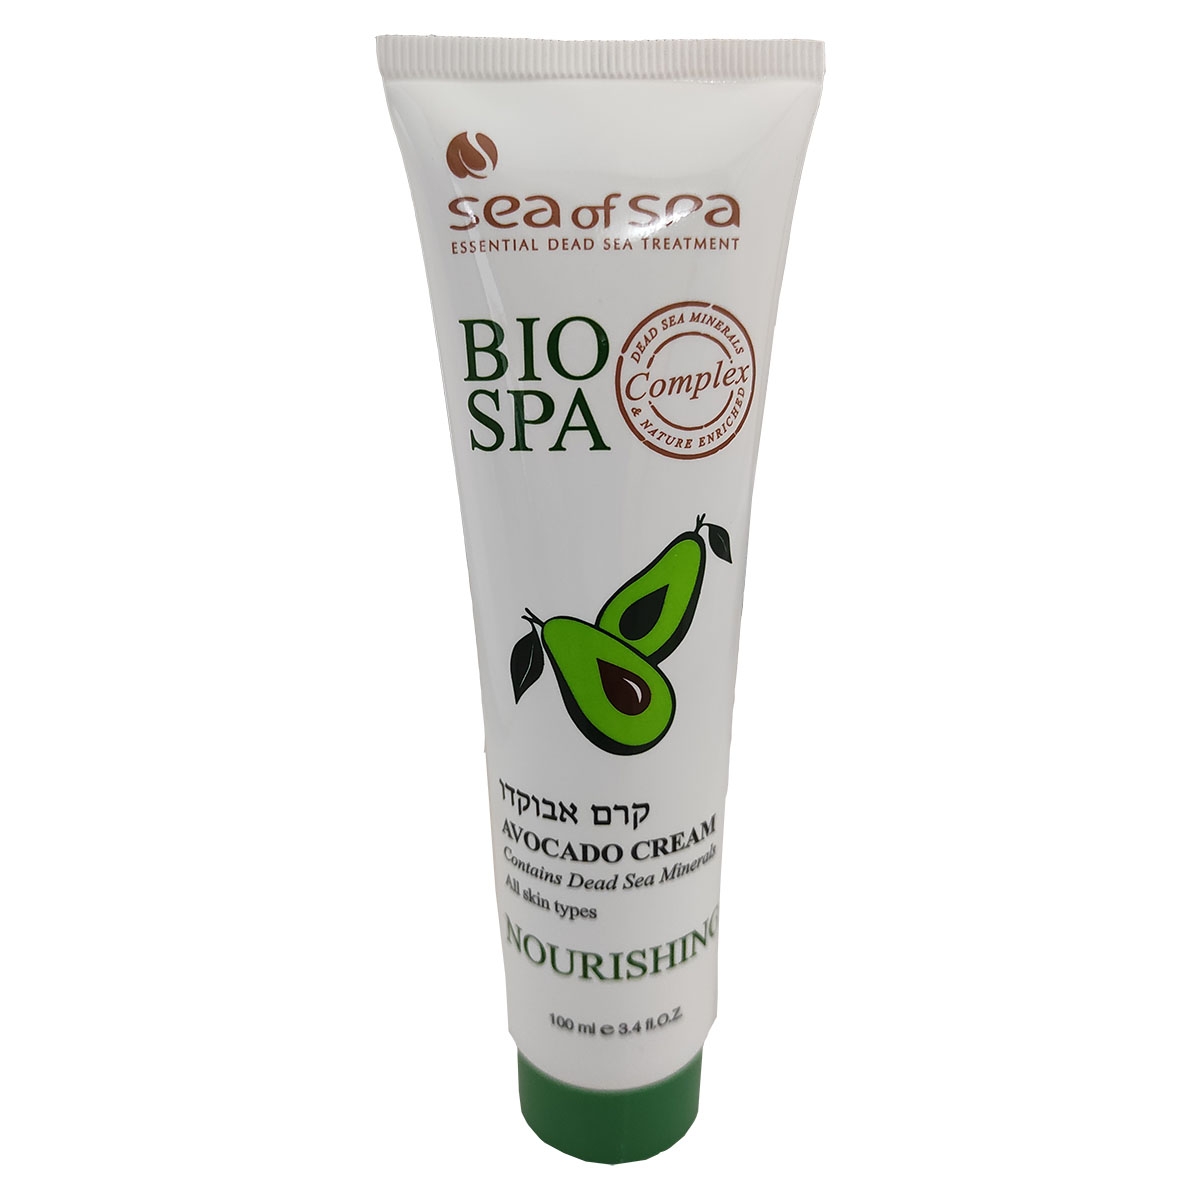 Sea of Spa Bio Spa Dead Sea Minerals Nourishing Face and Body Cream With Avocado Oil – For Soft and Supple Skin - 1